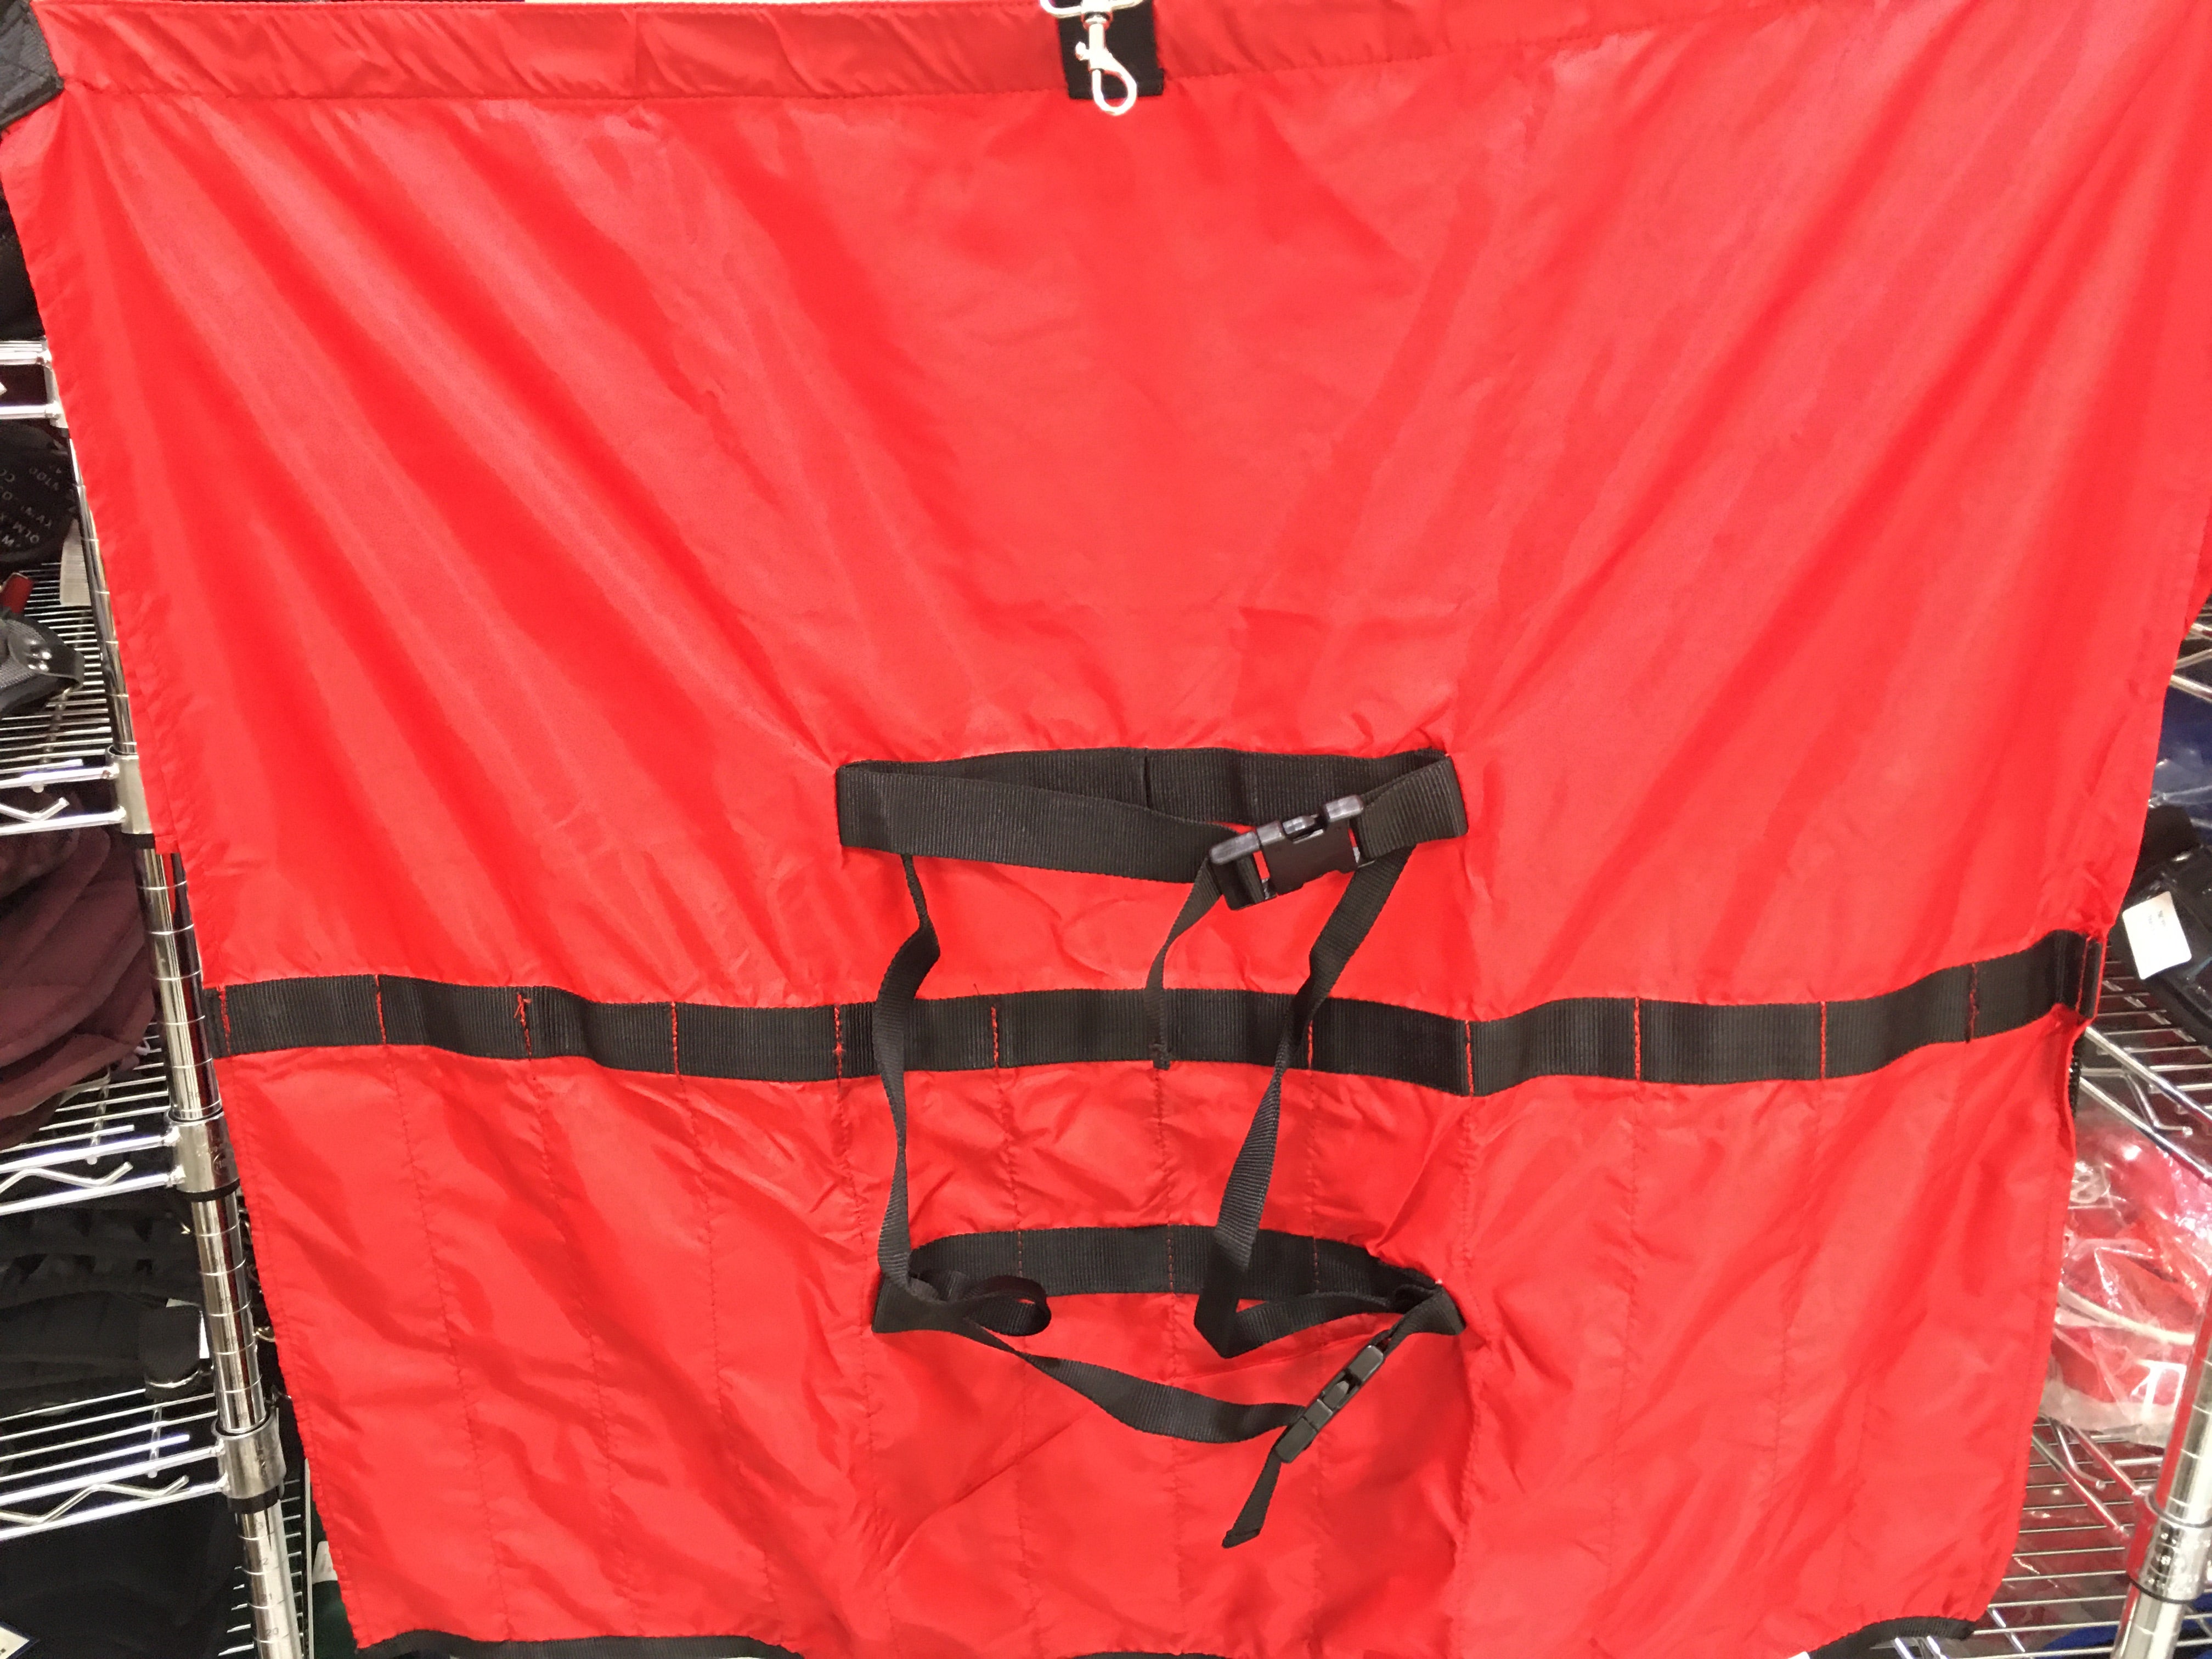 New Pro Team 12 Bat Hanging Fence Bag, 3 hooks Mesh Pockets Red/Black